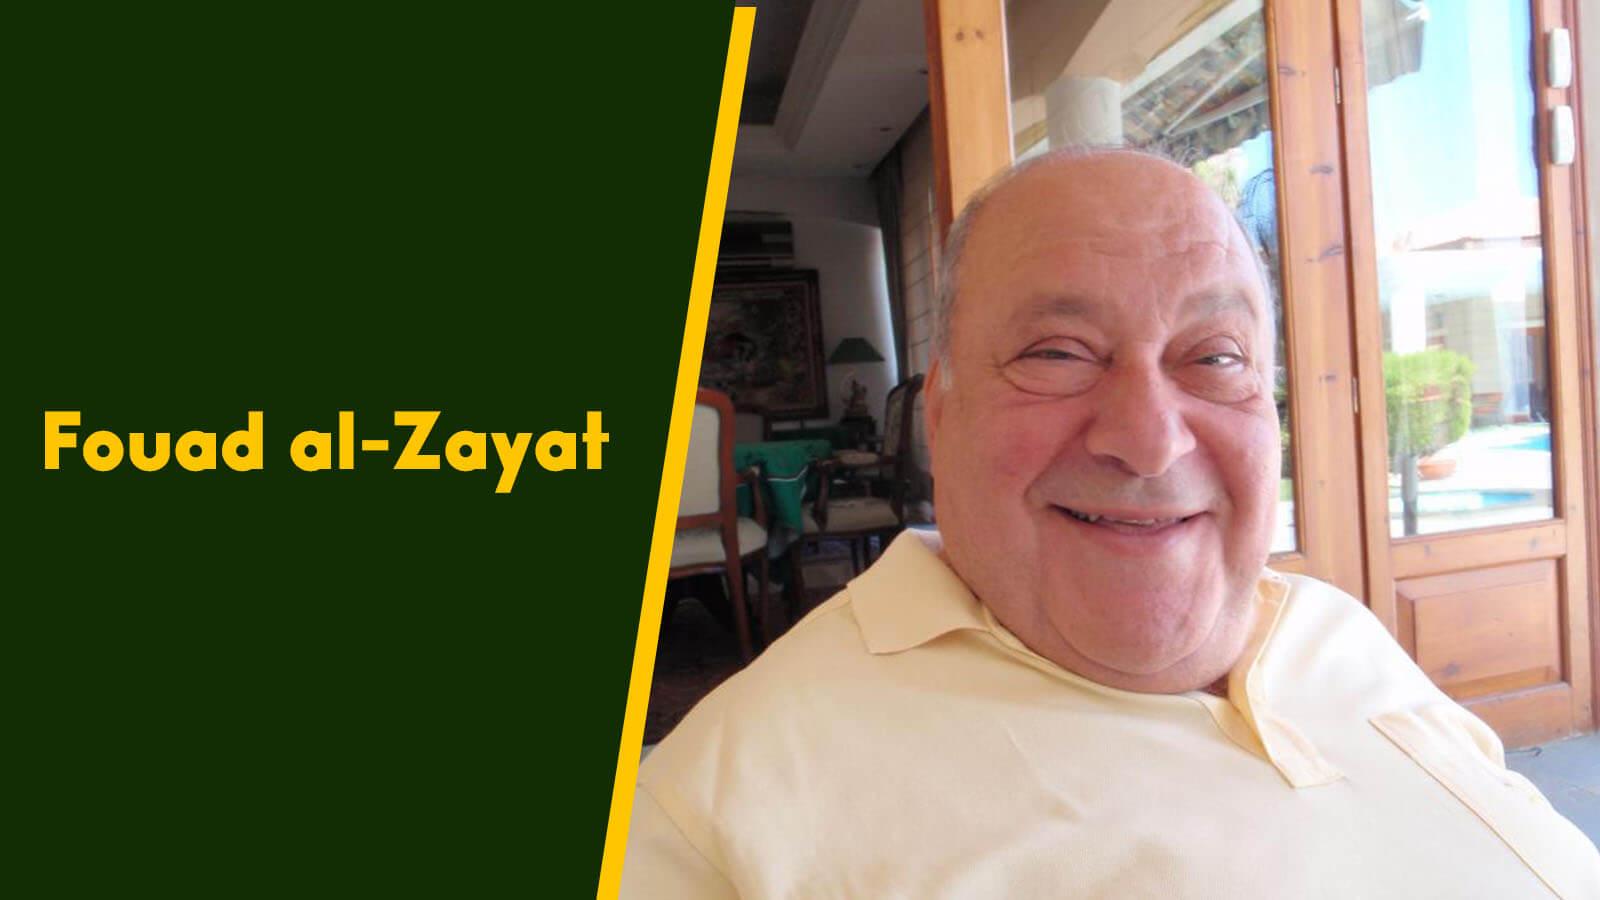 Fouad al-Zayat